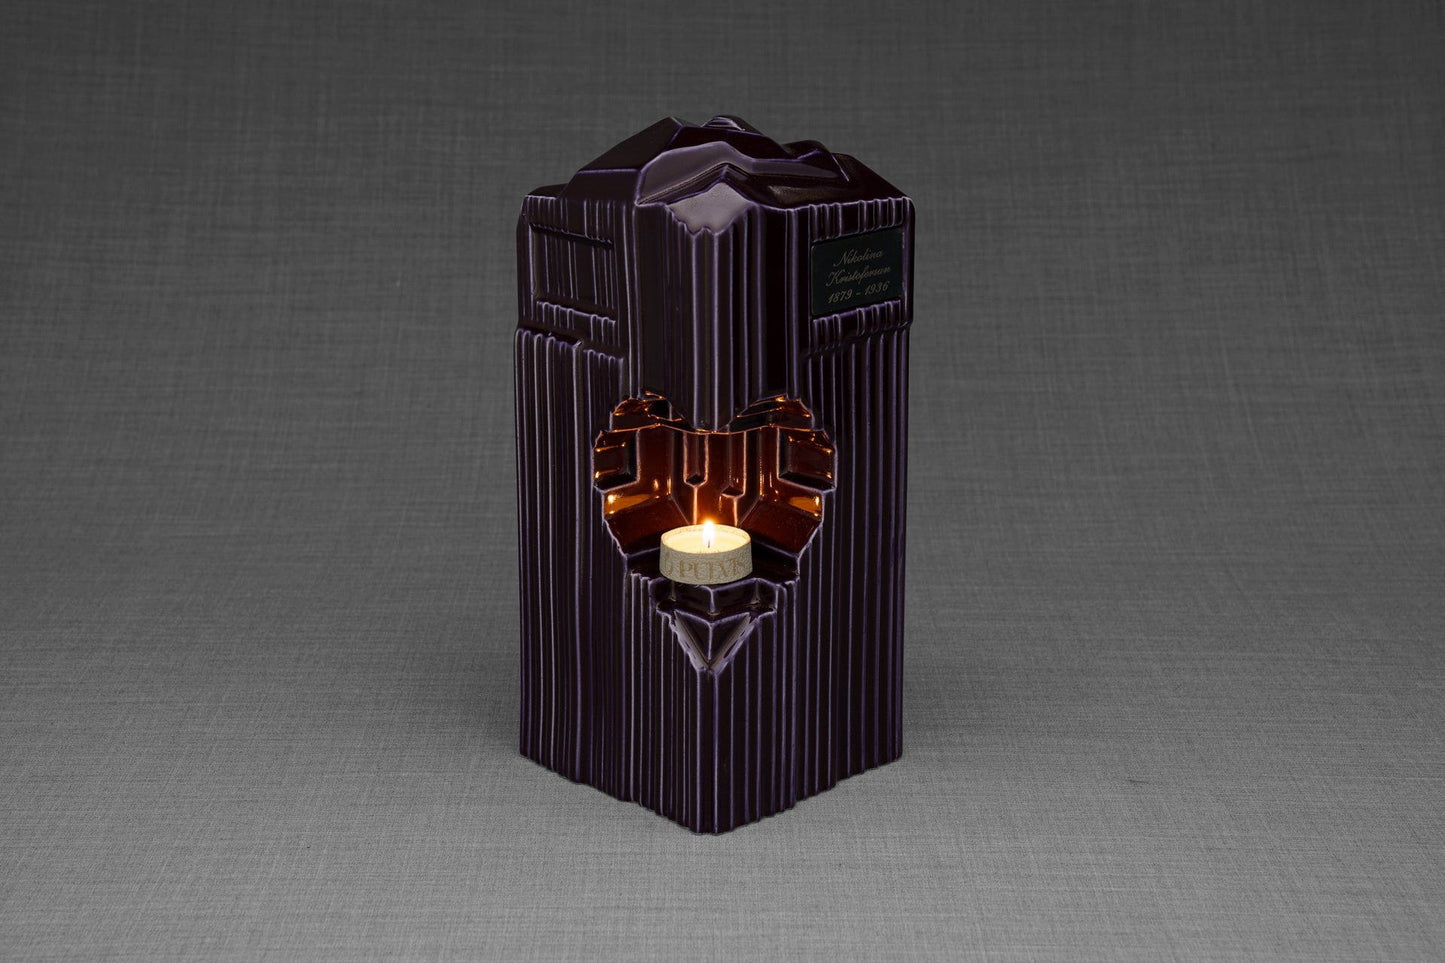 Pulvis Art Urns Adult Size Urn Cremation Candle Urn for Ashes "Heart" - Large | Violet | Ceramic